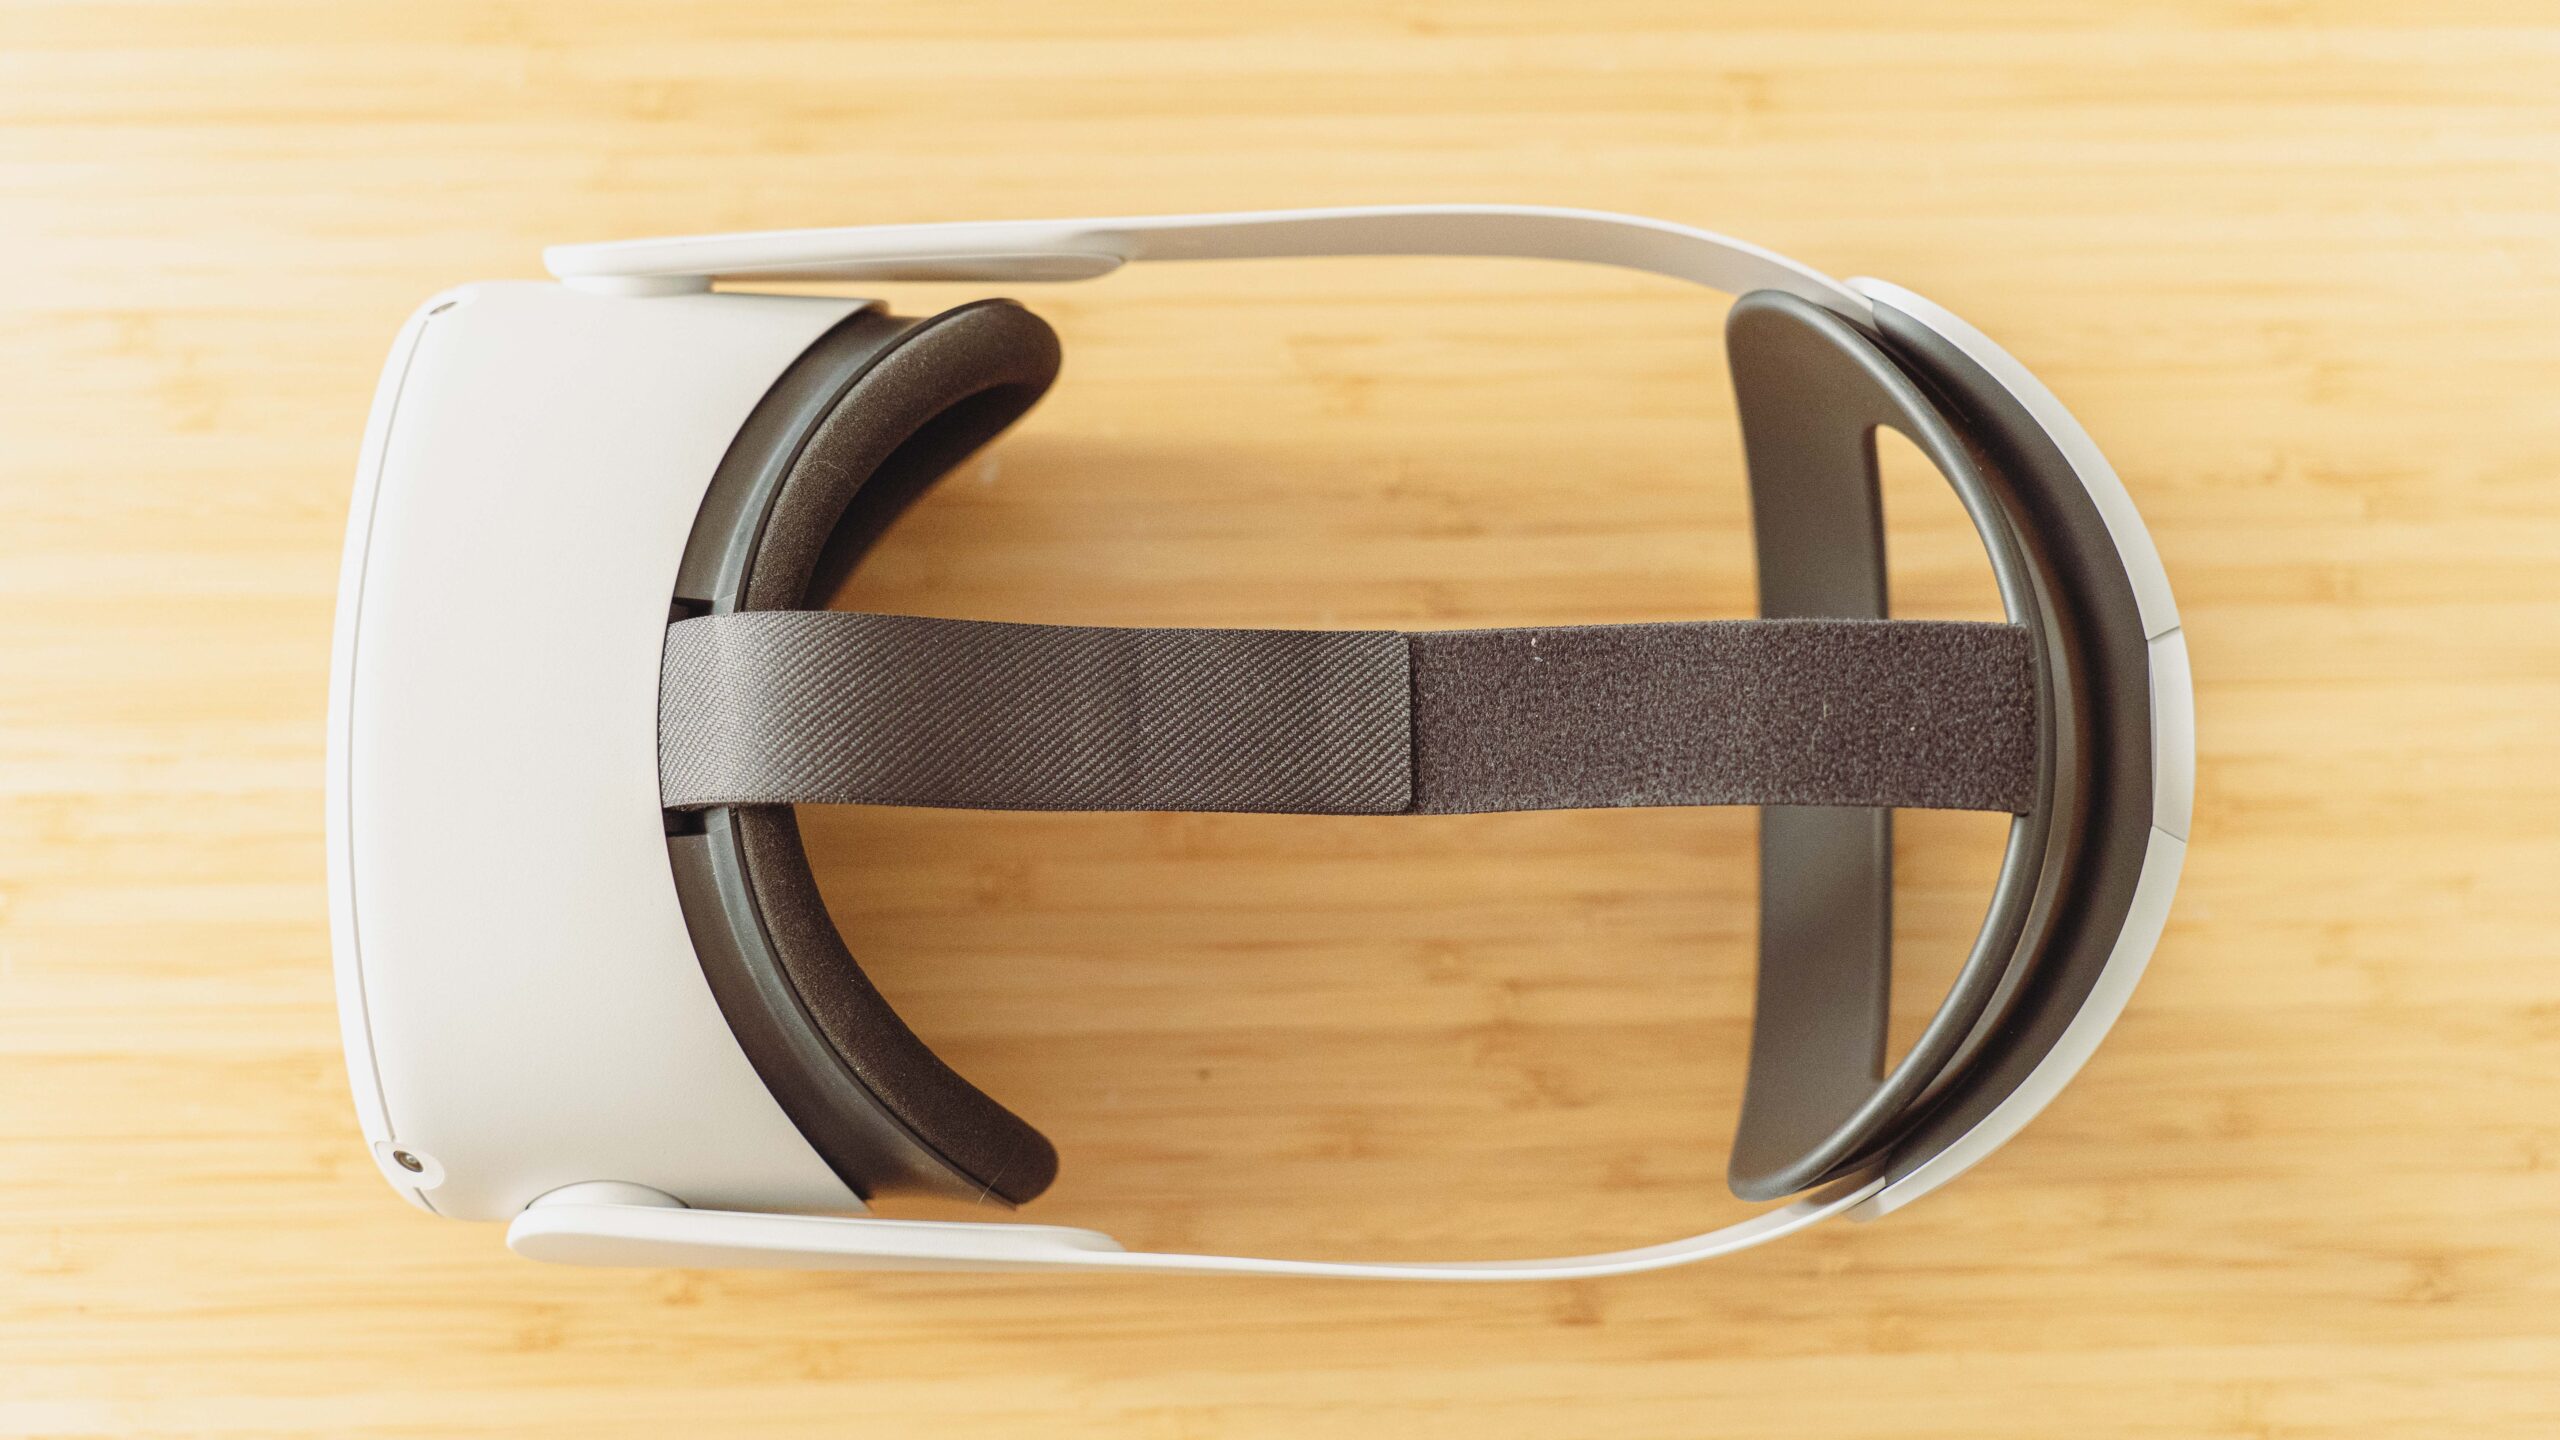 Meta lance son nouveau casque de réalité virtuelle juste avant Apple -  Forbes France